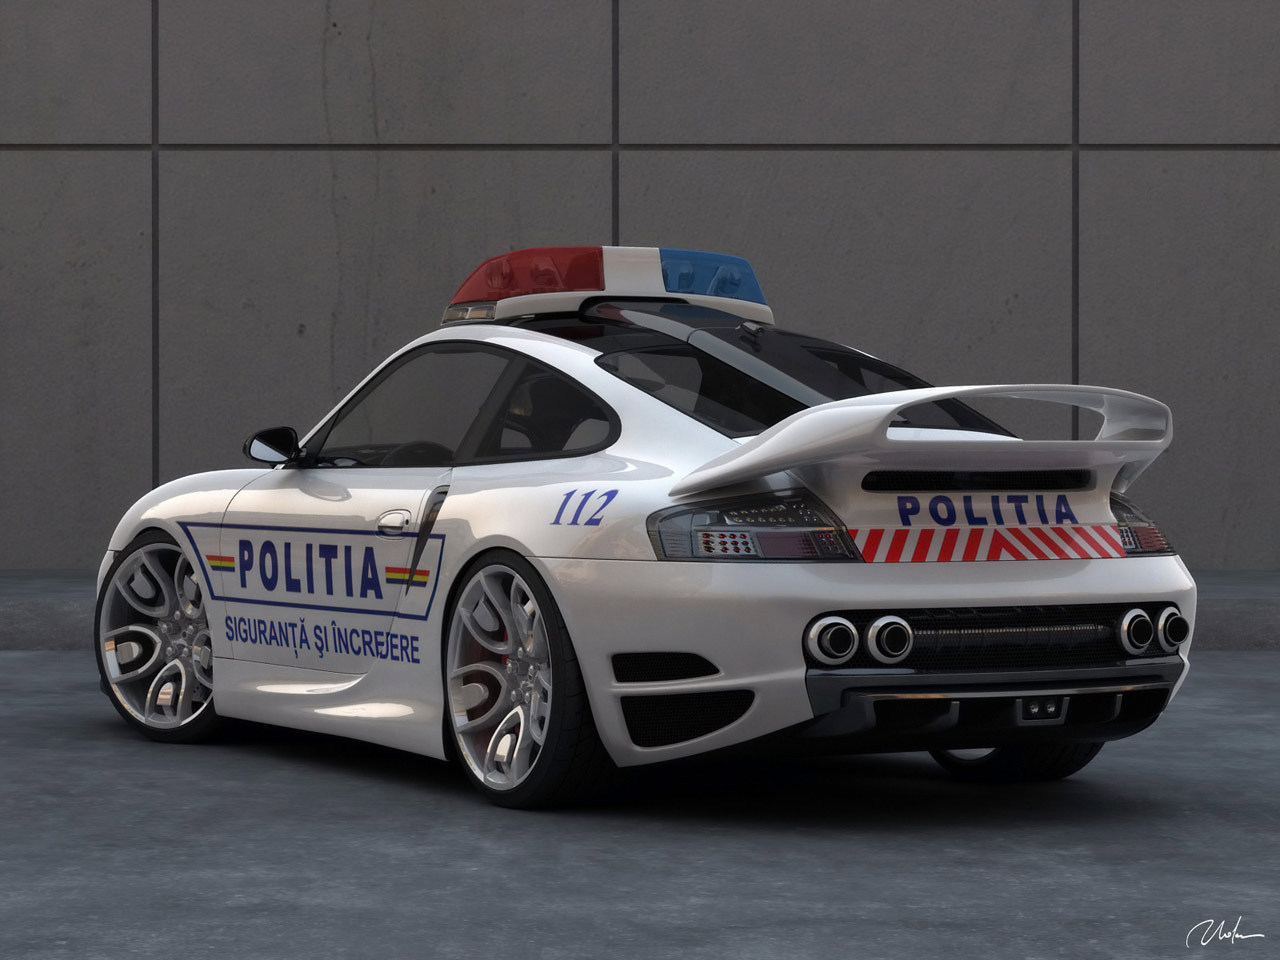  911 TUNING   POLICE CAR   Porsche Wallpaper 14319159